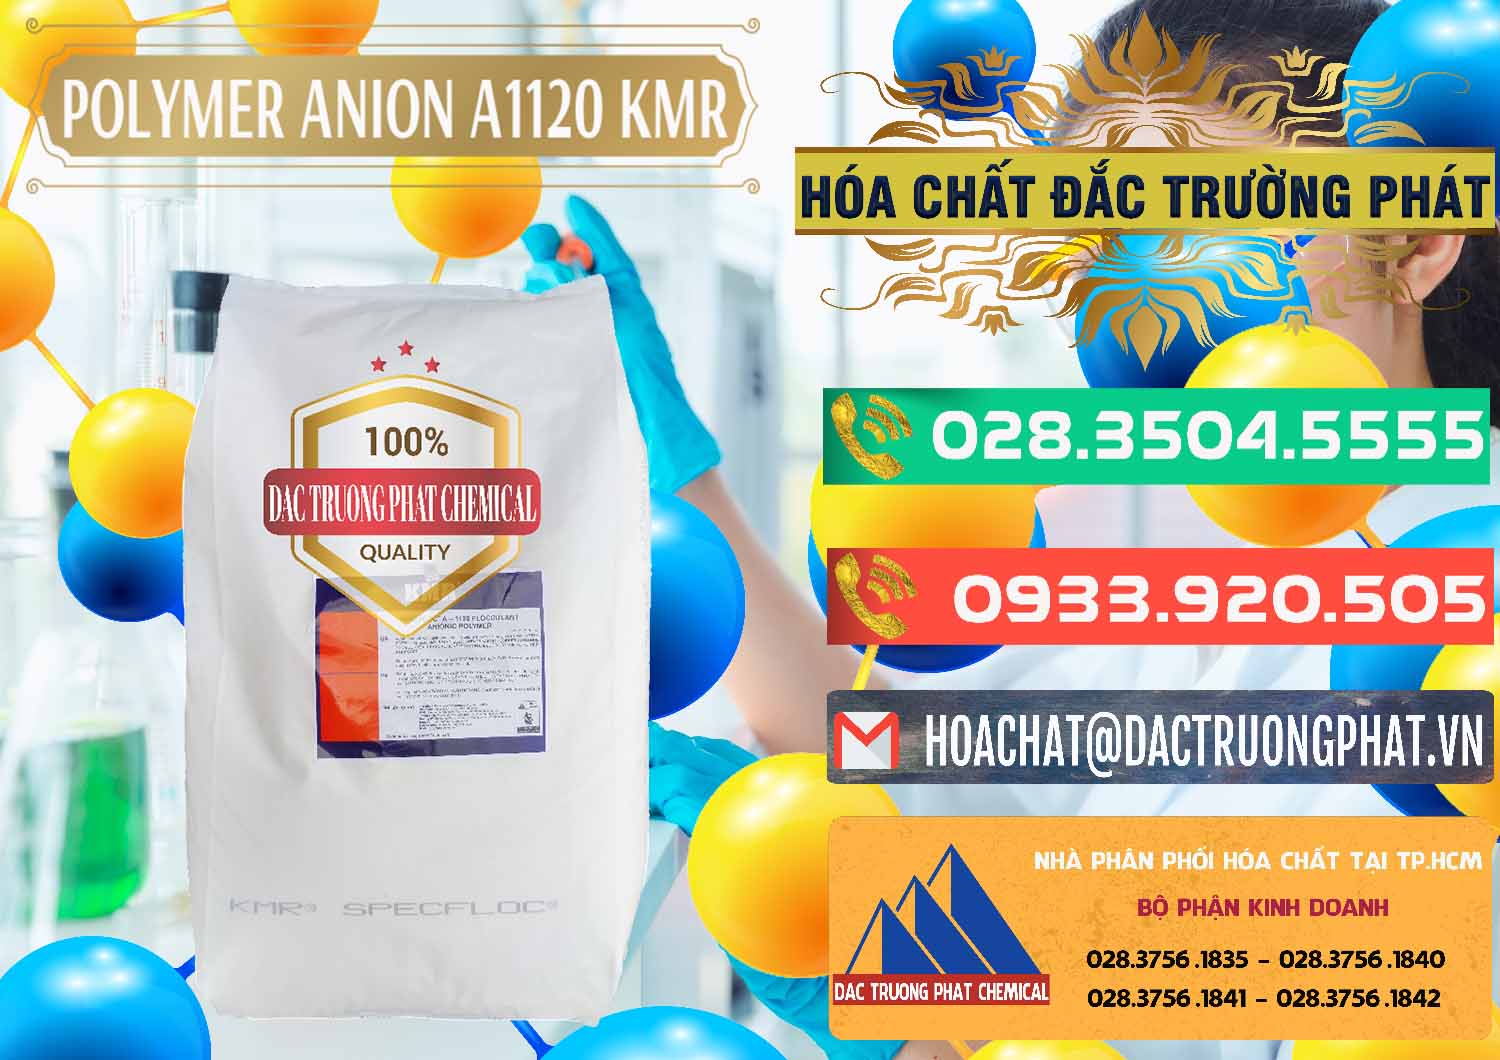 Nơi kinh doanh & bán Polymer Anion A1120 - KMR Anh Quốc England - 0119 - Công ty cung cấp & phân phối hóa chất tại TP.HCM - congtyhoachat.com.vn